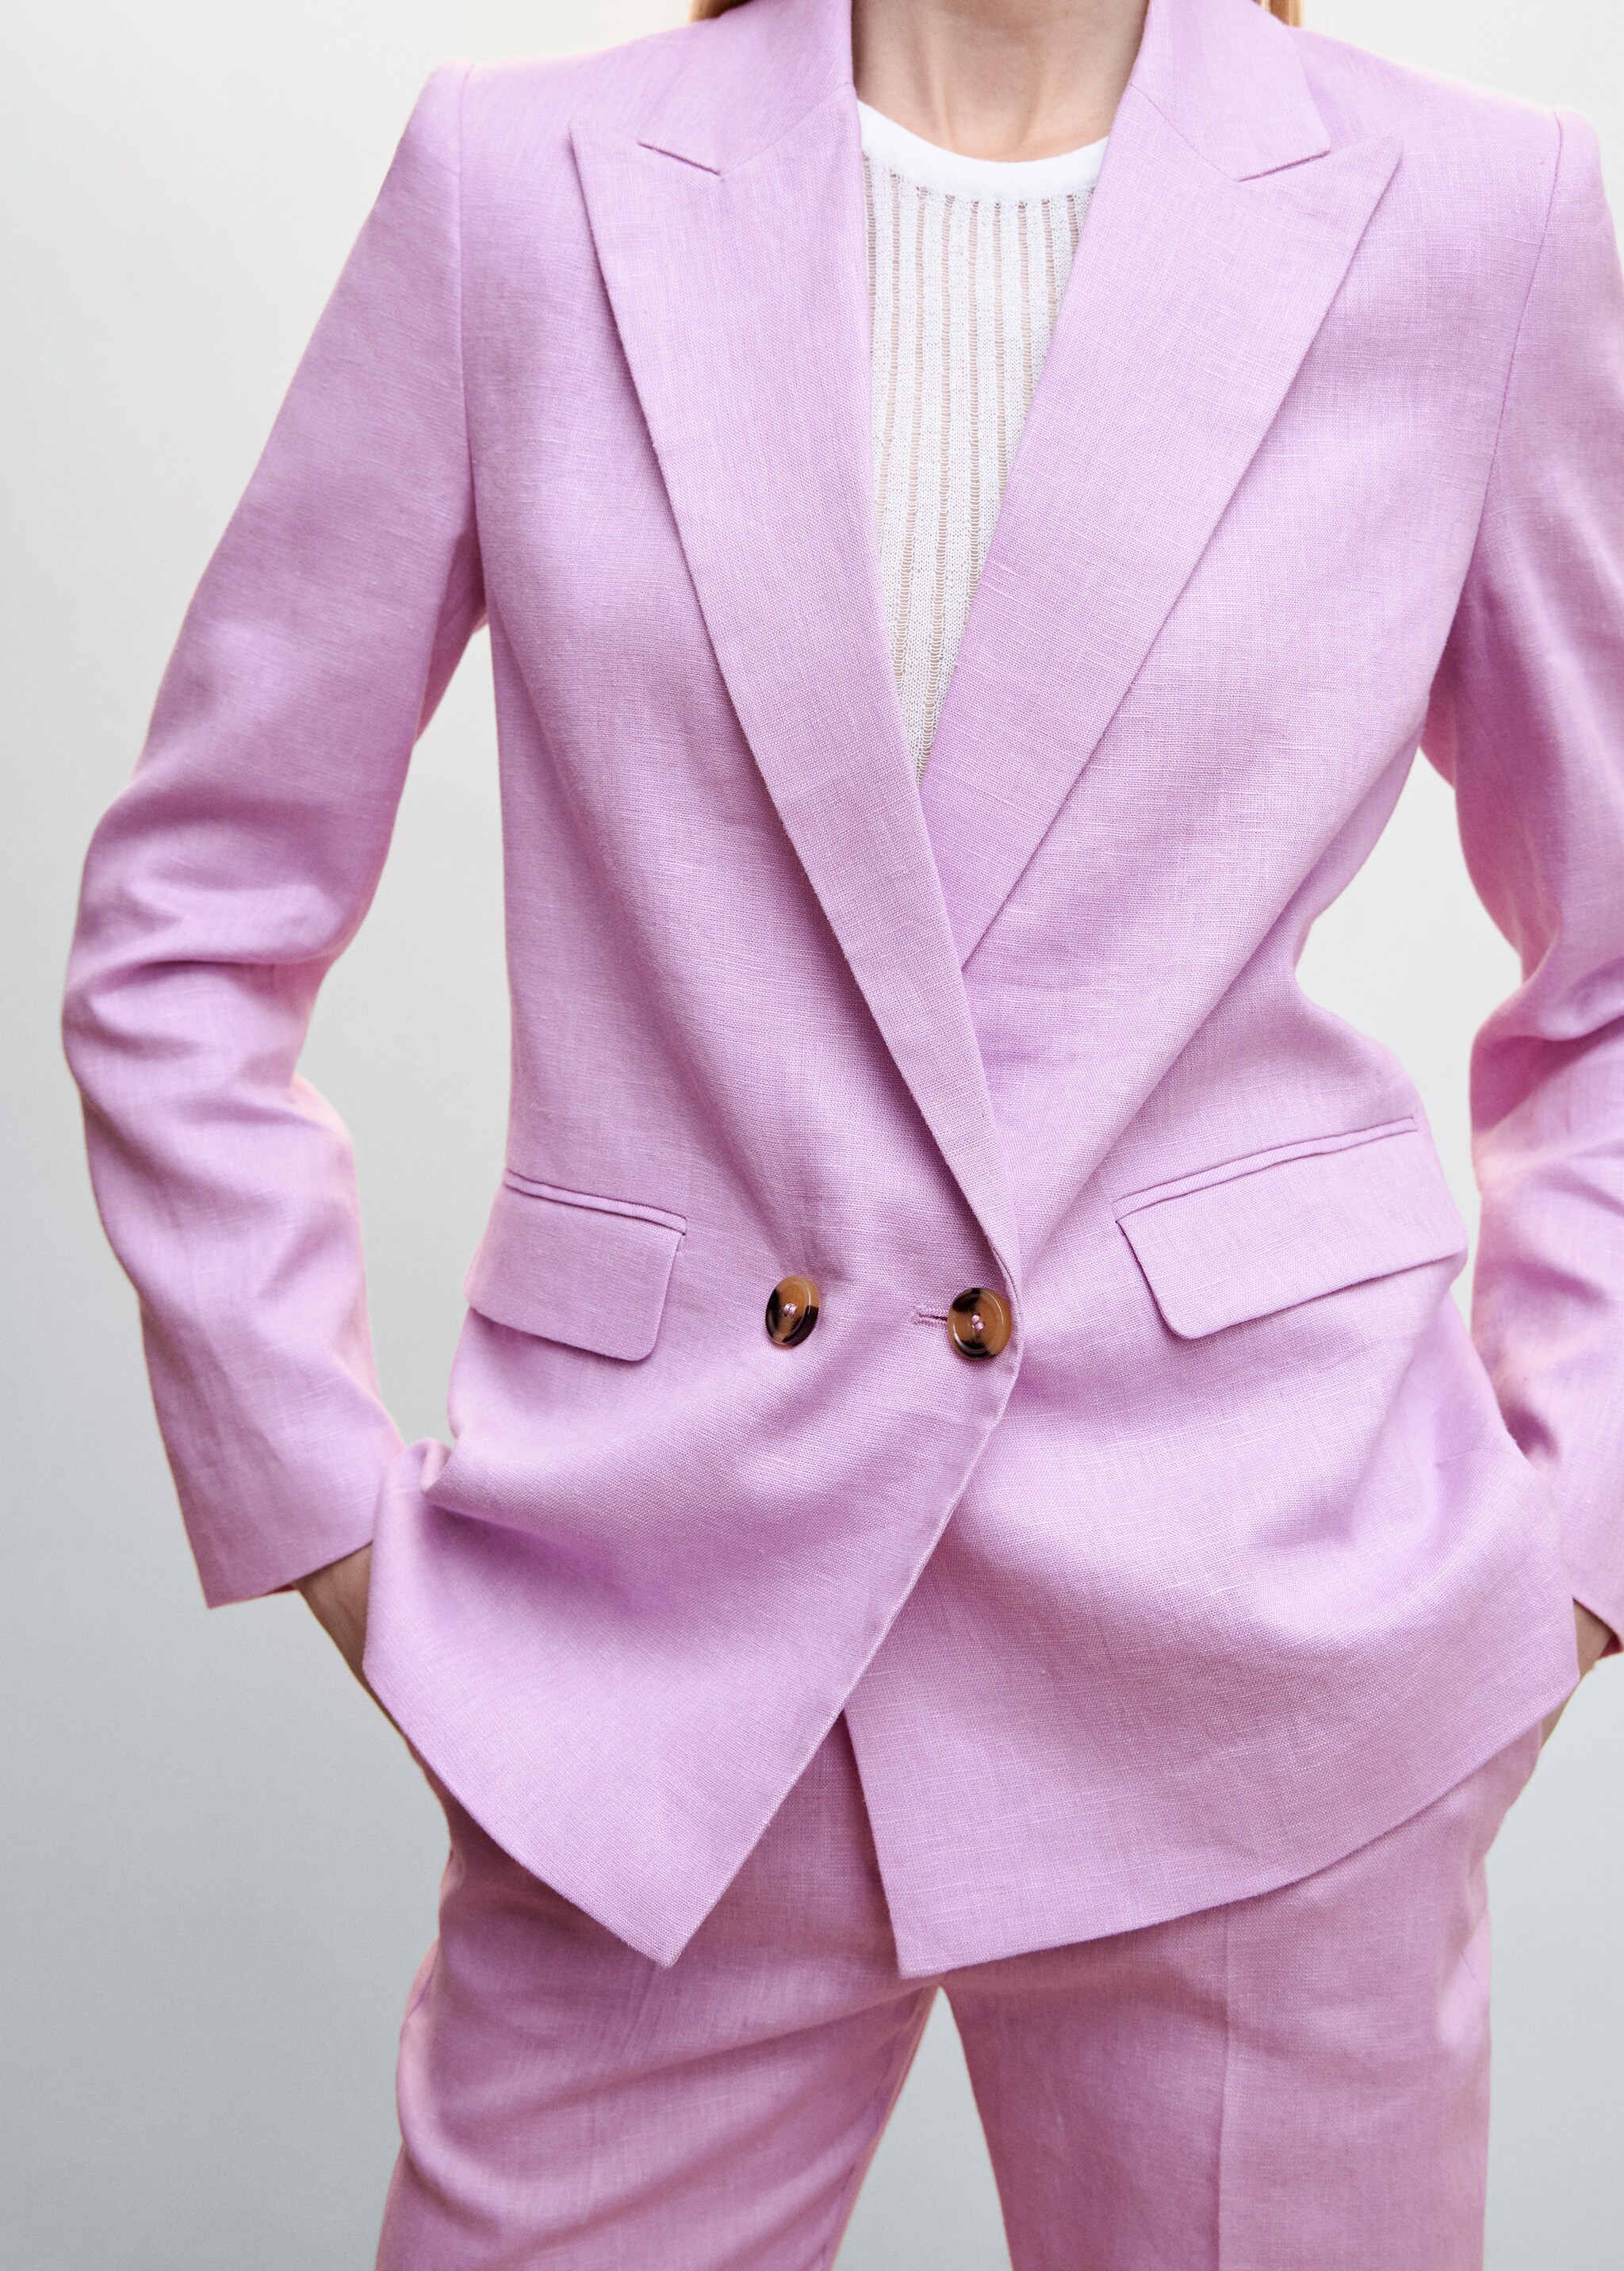 Blazer suit 100% linen - Details of the article 6